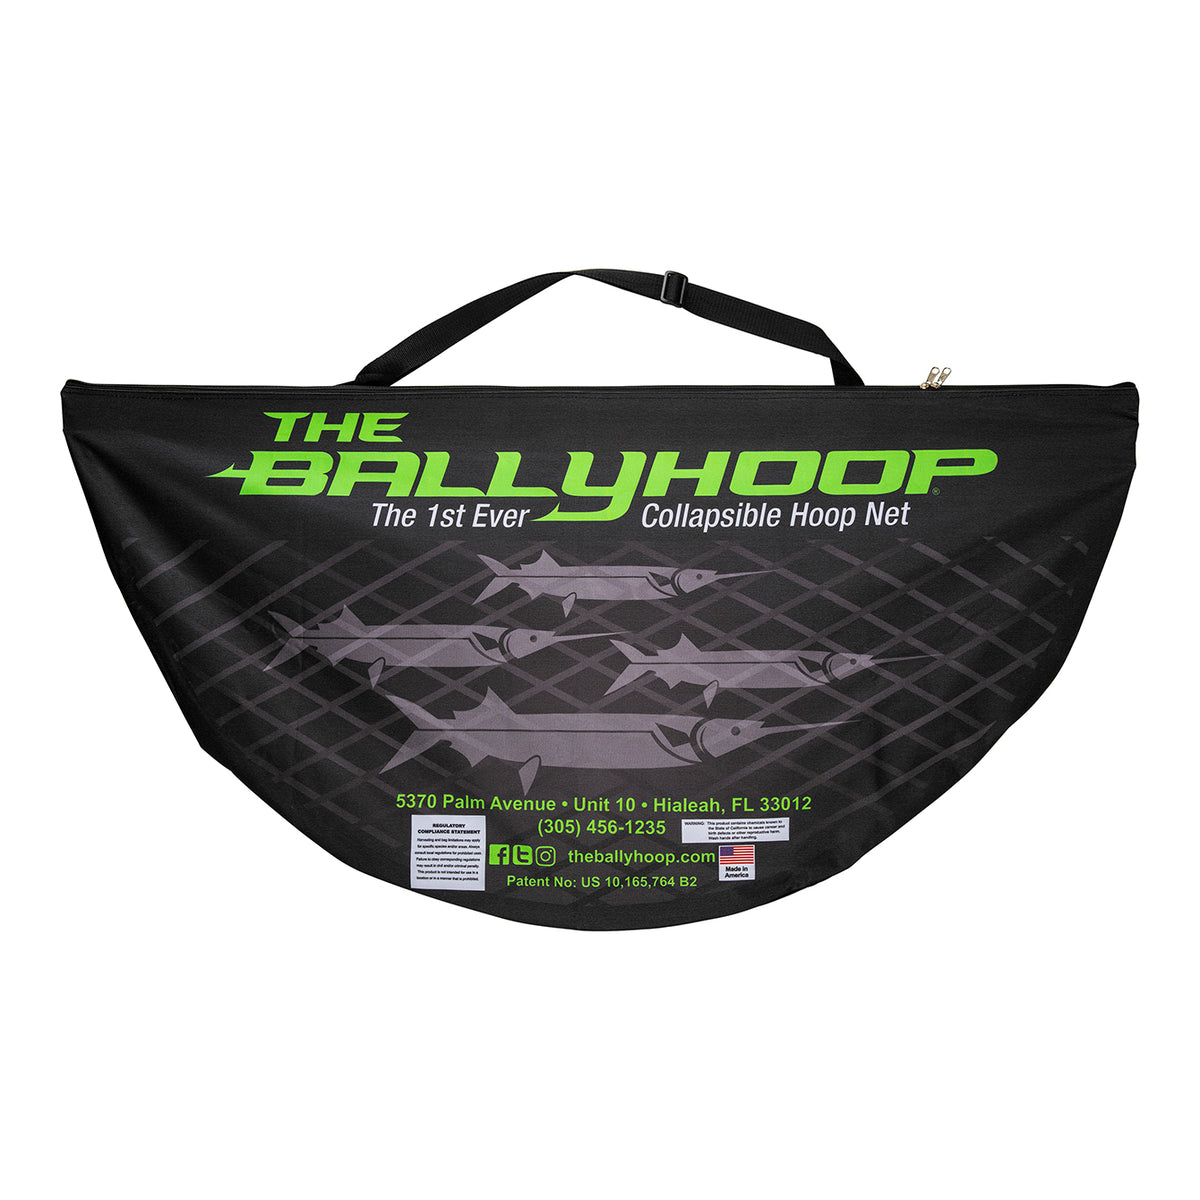 The BallyHoop - Blade 18 Collapsible Hoop Net